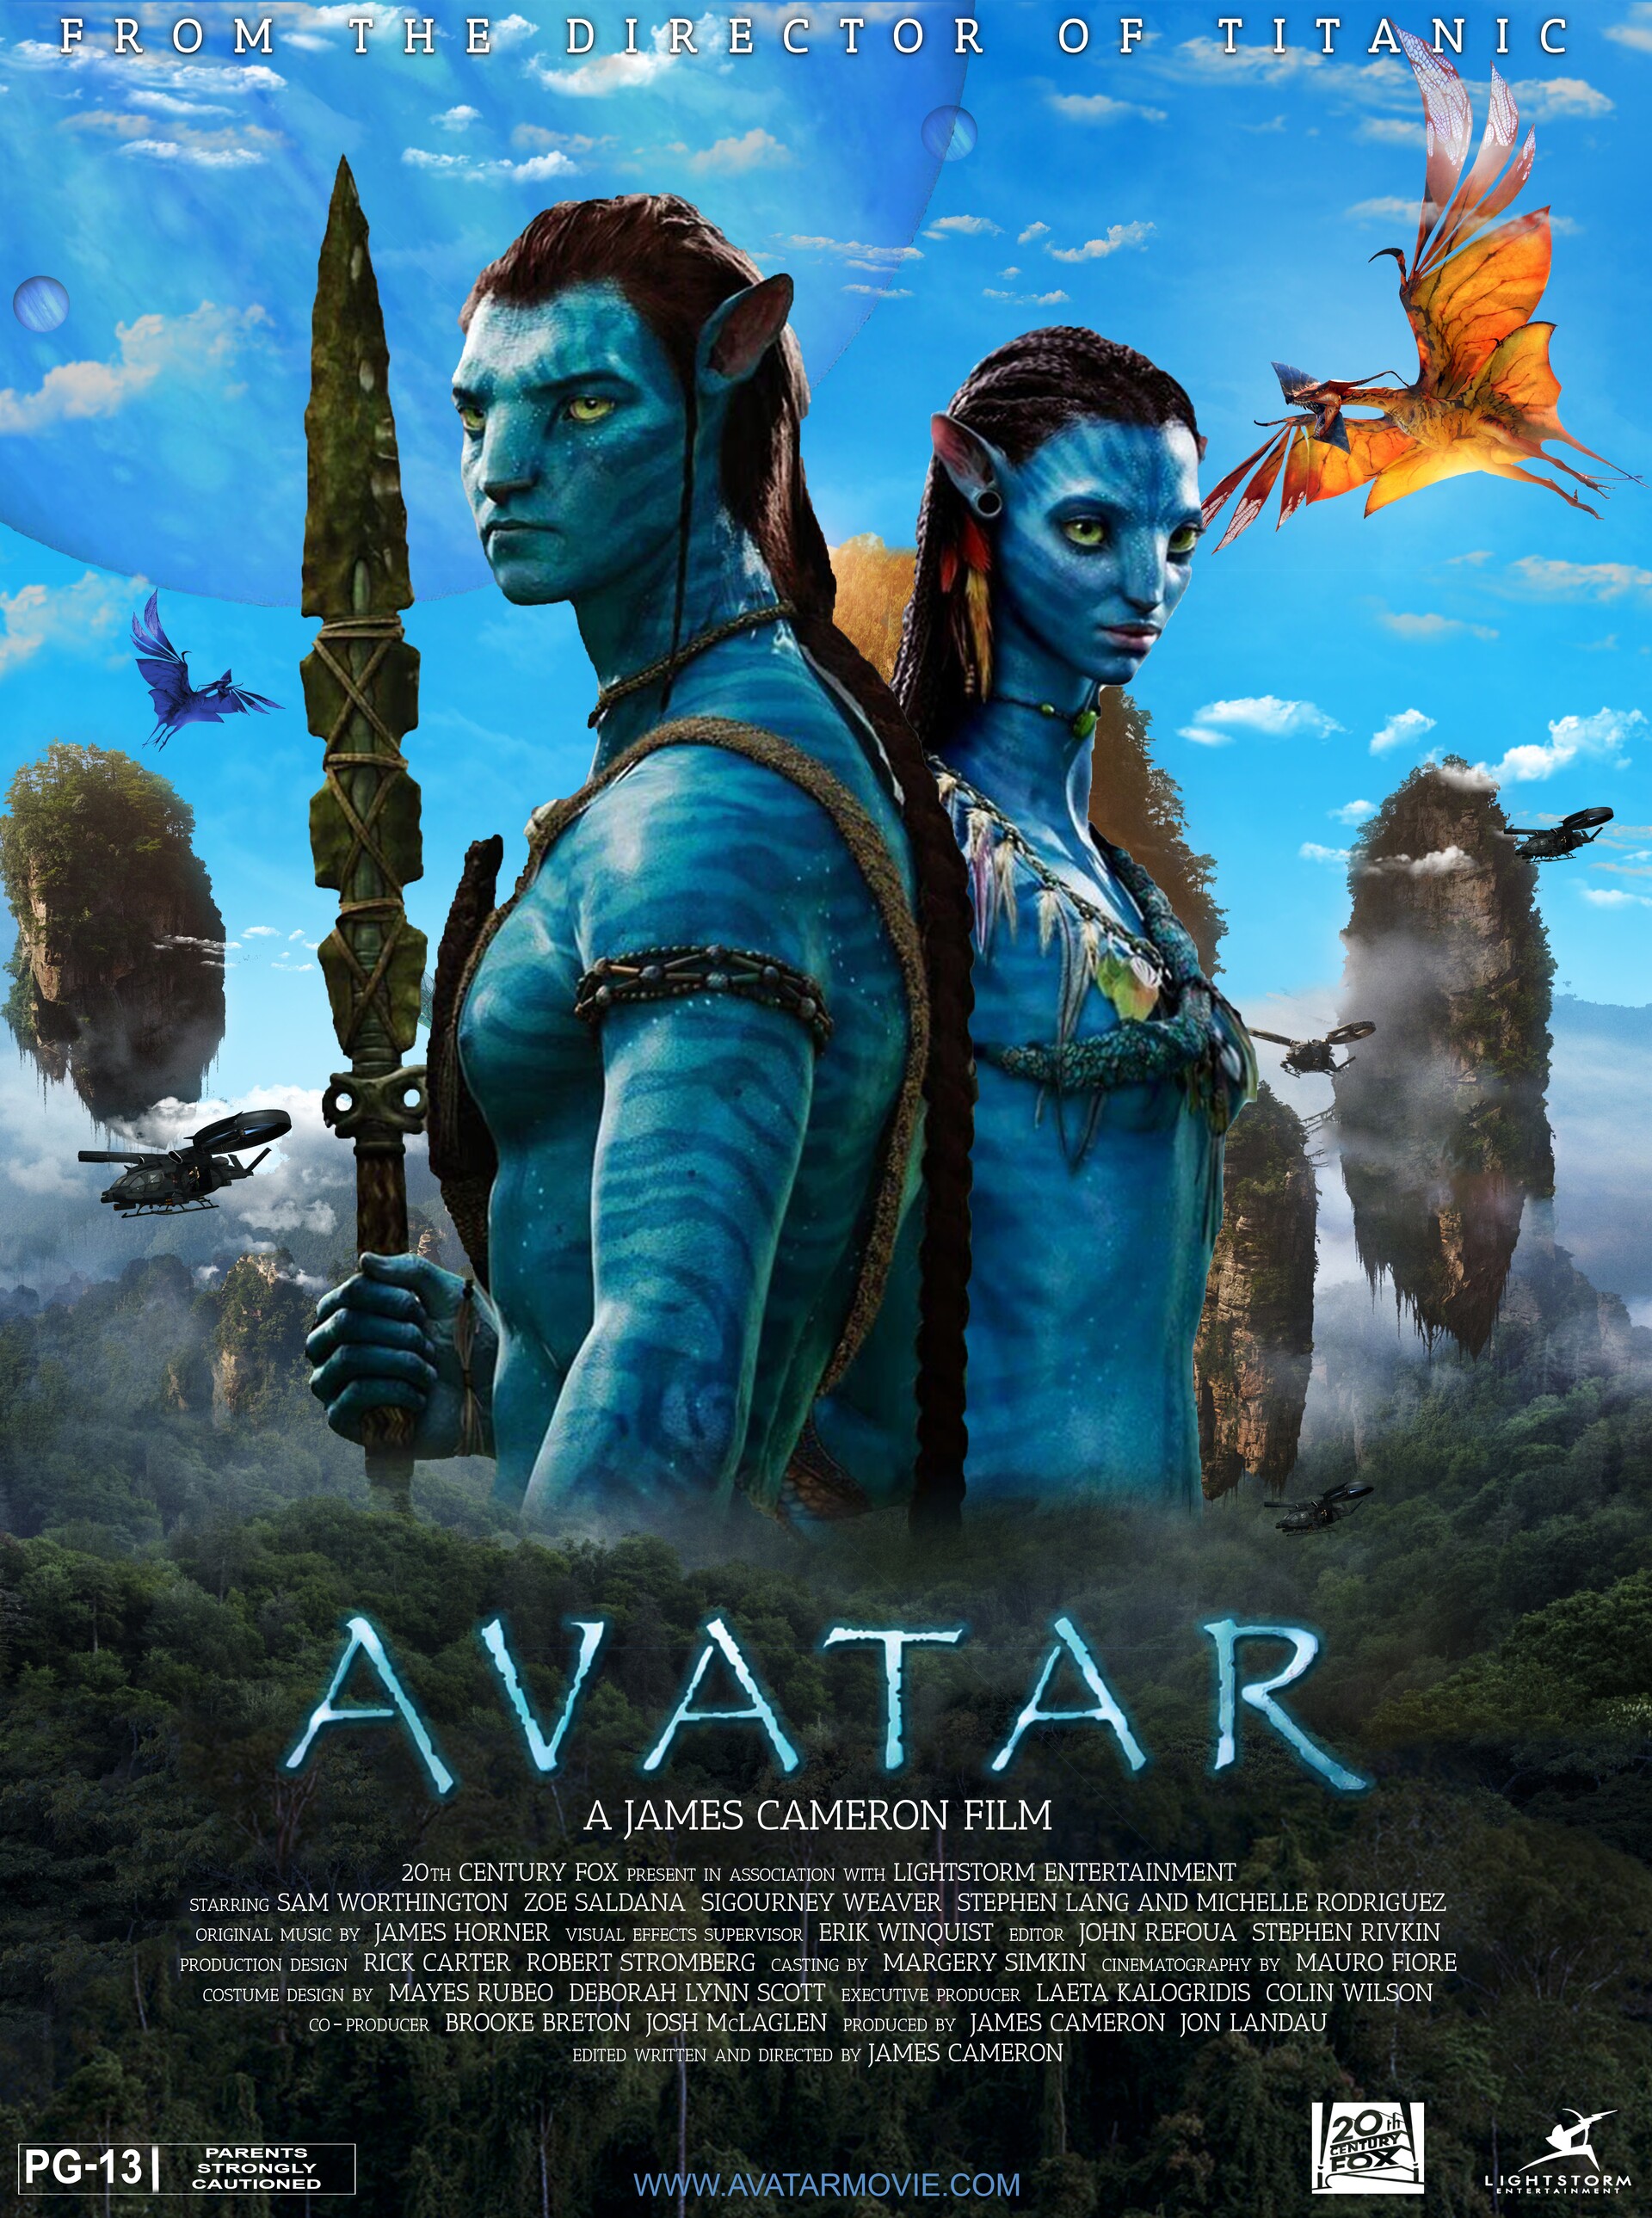 ArtStation - AVATAR Movie Poster